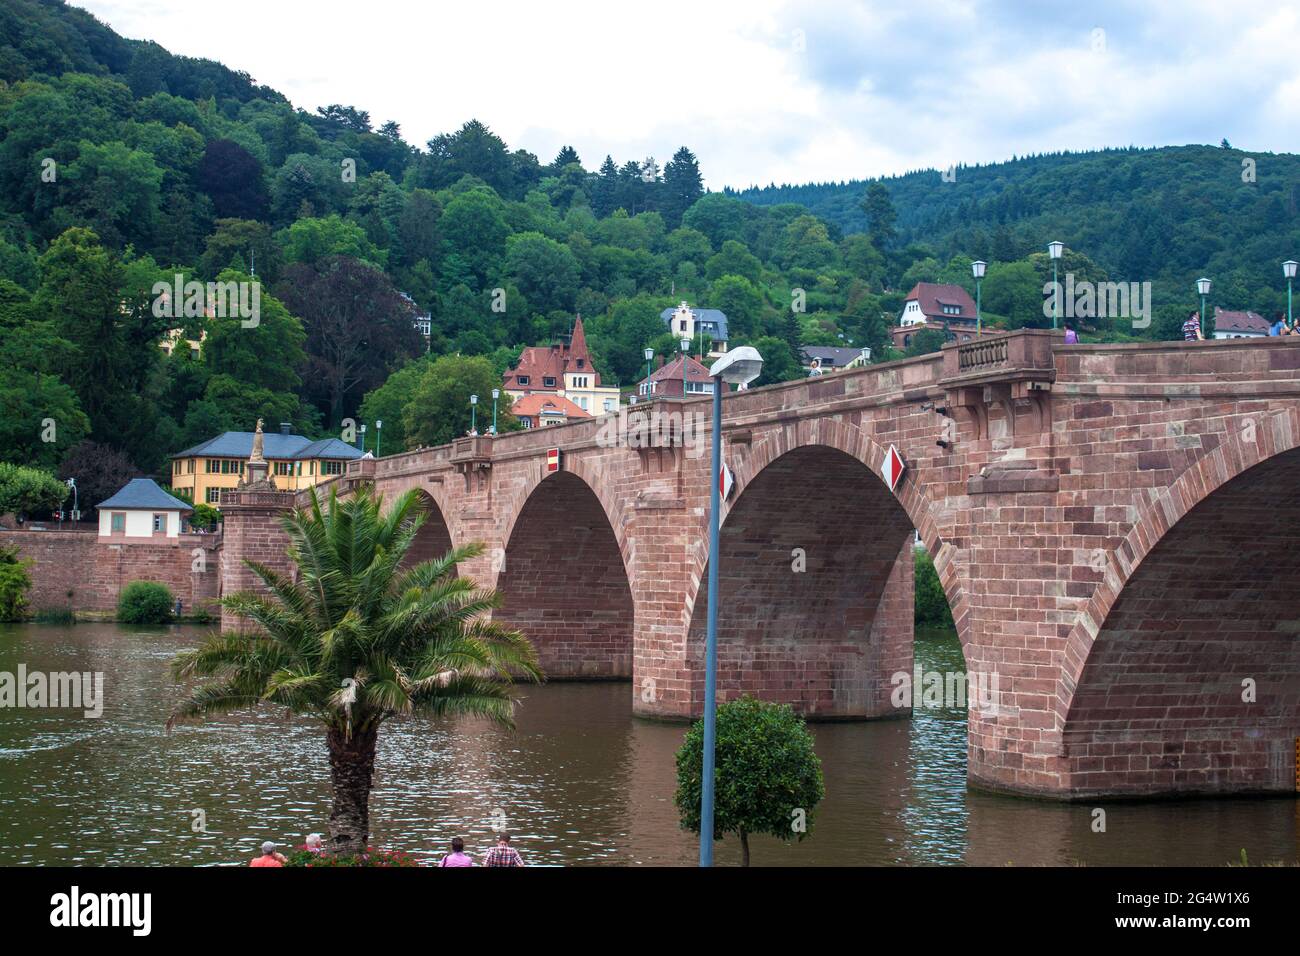 Old bridge in Heidelberg, Germany Stock Photo